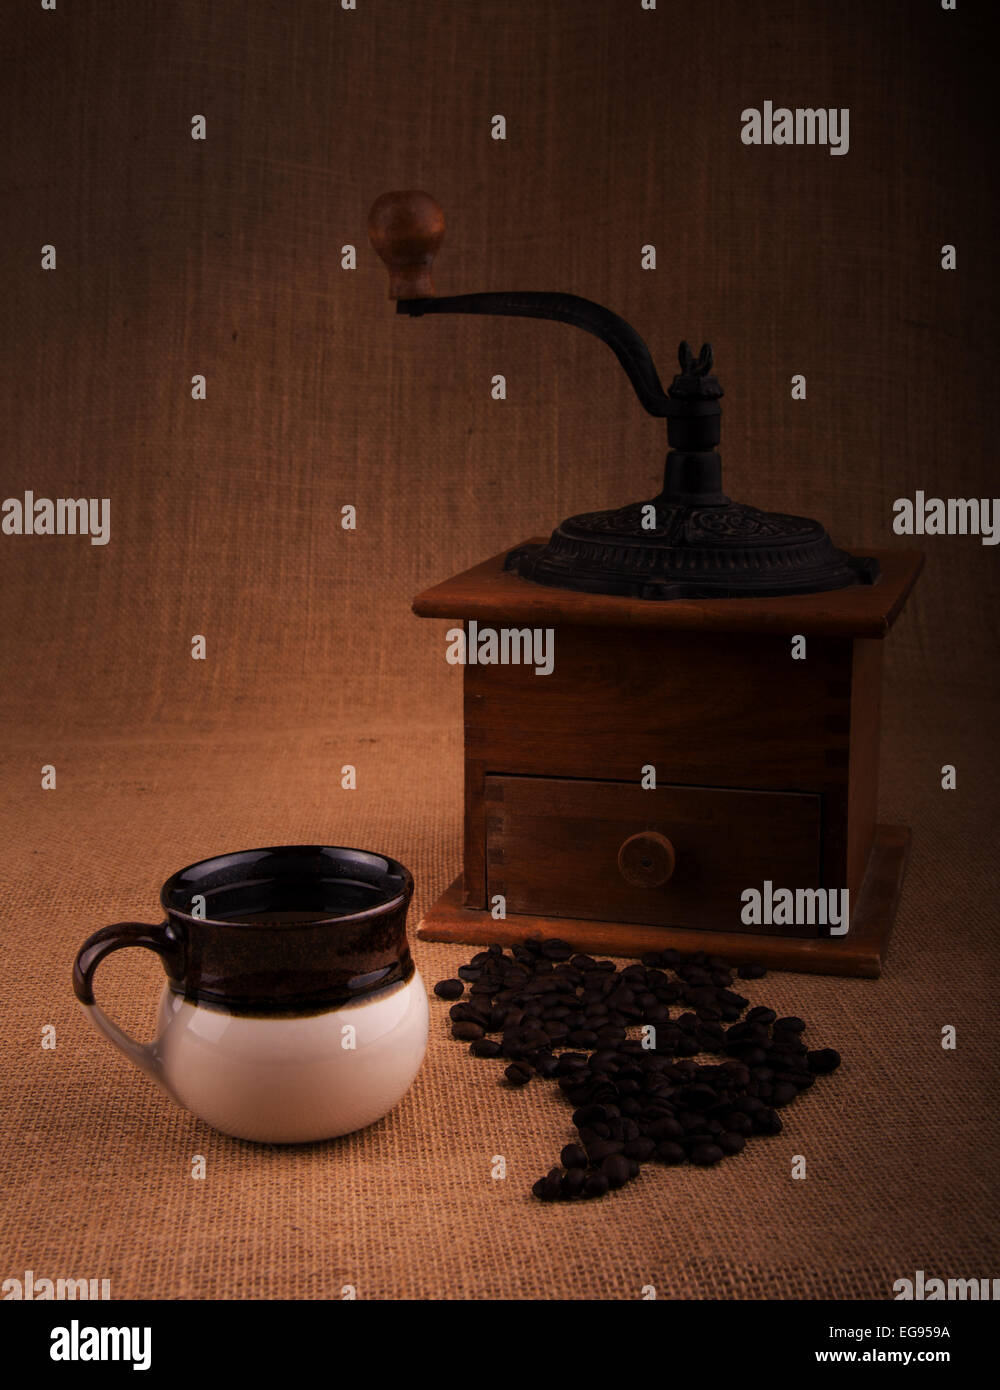 Taza de café con frijoles y un viejo molinillo en el fondo, una imagen de tonos cálidos con vignette Foto de stock